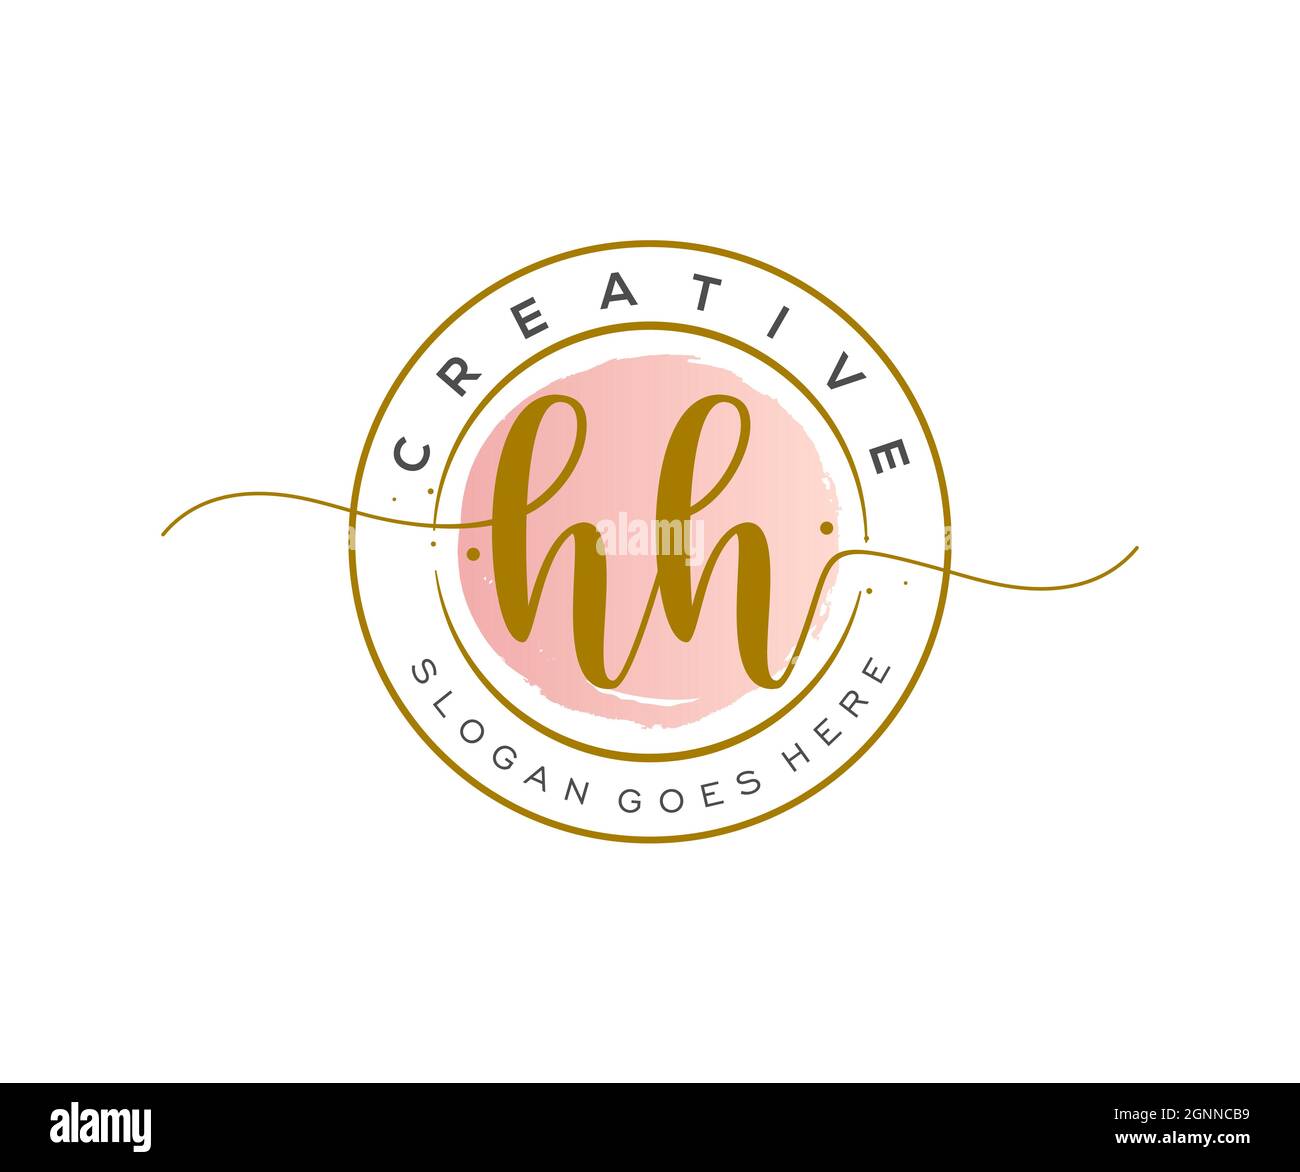 HH monogramma di bellezza del logo Femminile e design elegante del logo, il logo di scrittura a mano della firma iniziale, il matrimonio, la moda, floreale e botanico con creativo Illustrazione Vettoriale